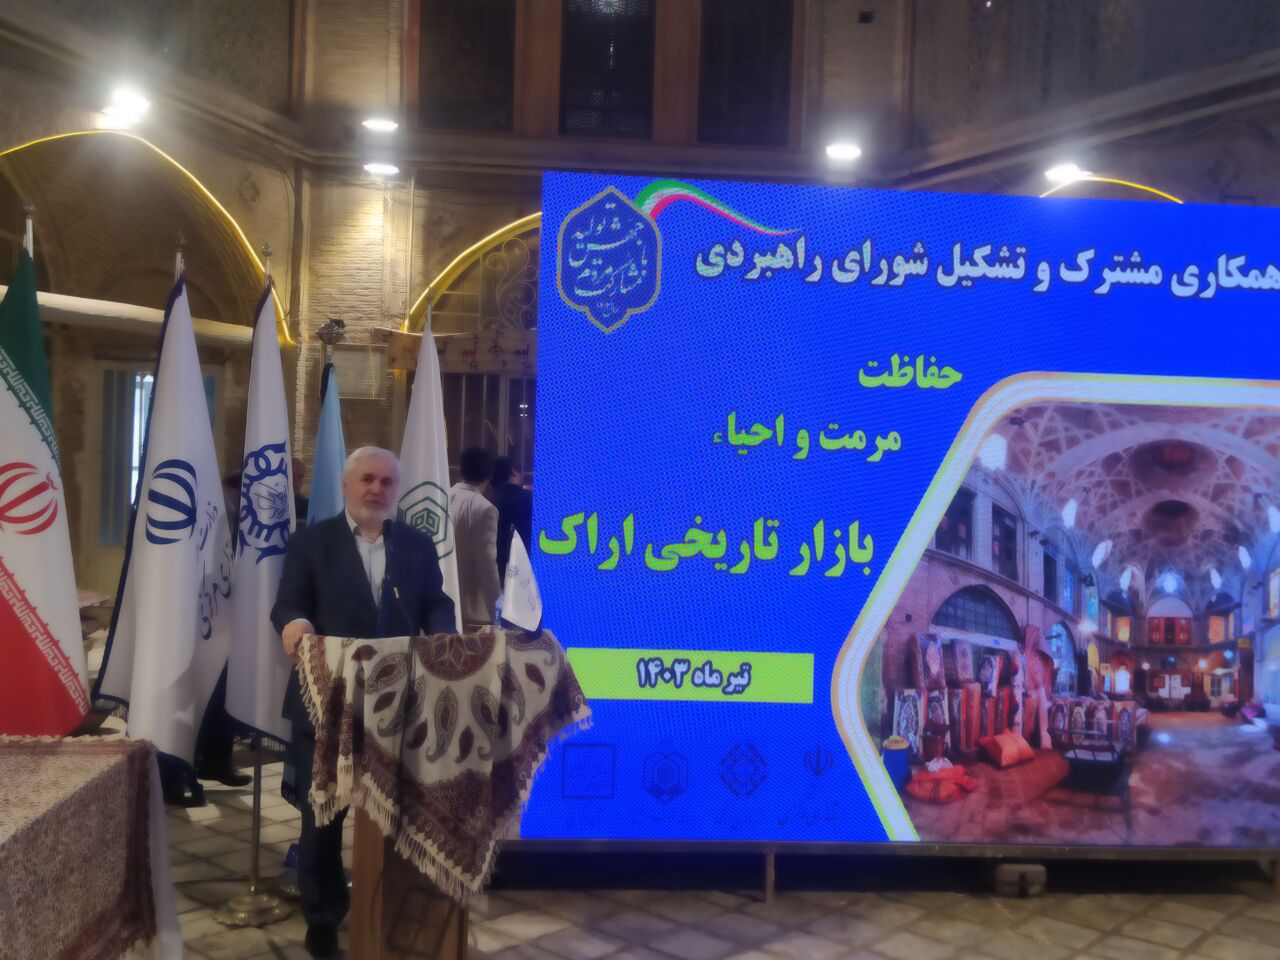 ایران رتبه پنجم جهانی ثبت آثار ناملموس را کسب کرد